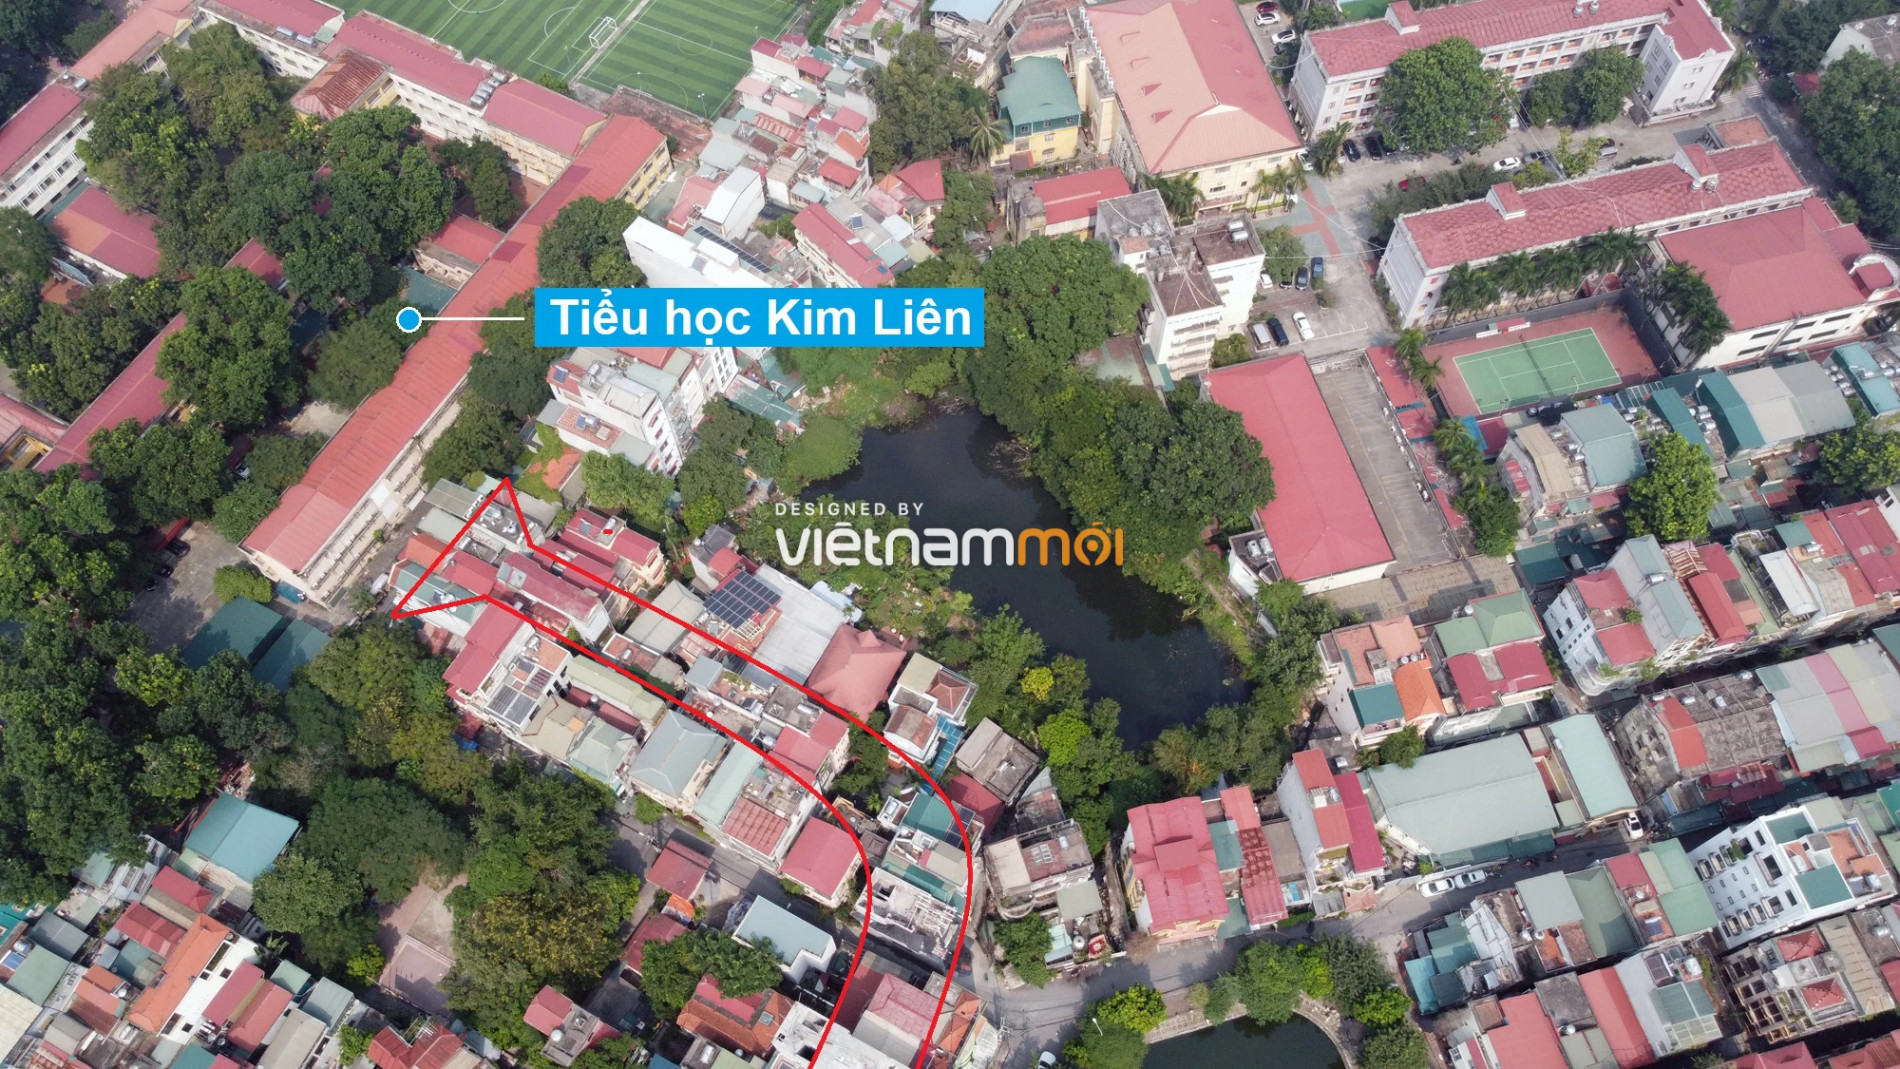 Những khu đất sắp thu hồi để mở đường ở quận Đống Đa, Hà Nội (phần 2) - Ảnh 7.